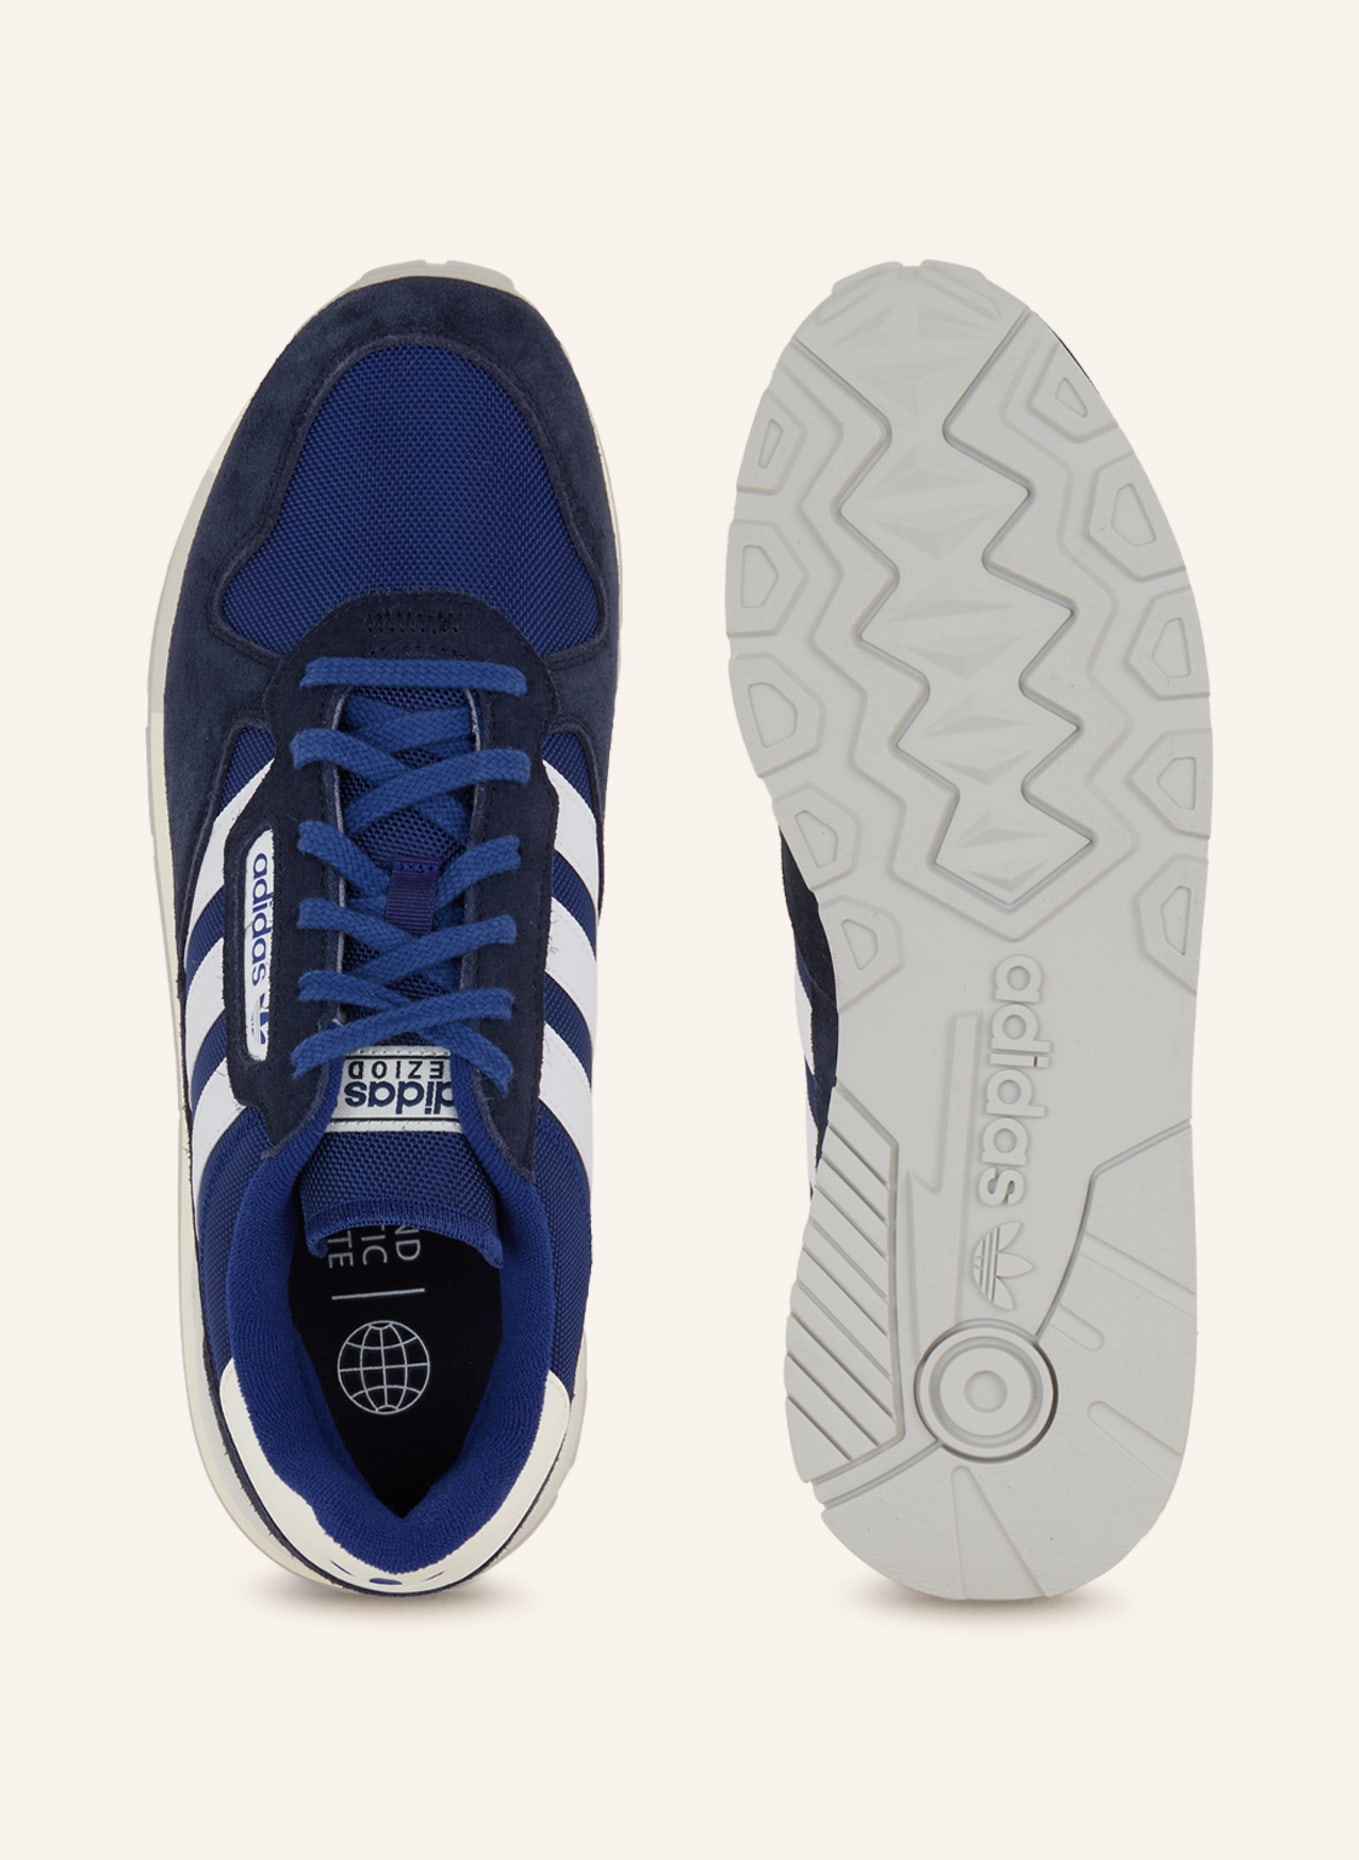 adidas Originals Sneakers TREZIOD in blue/ white/ 2 dark blue